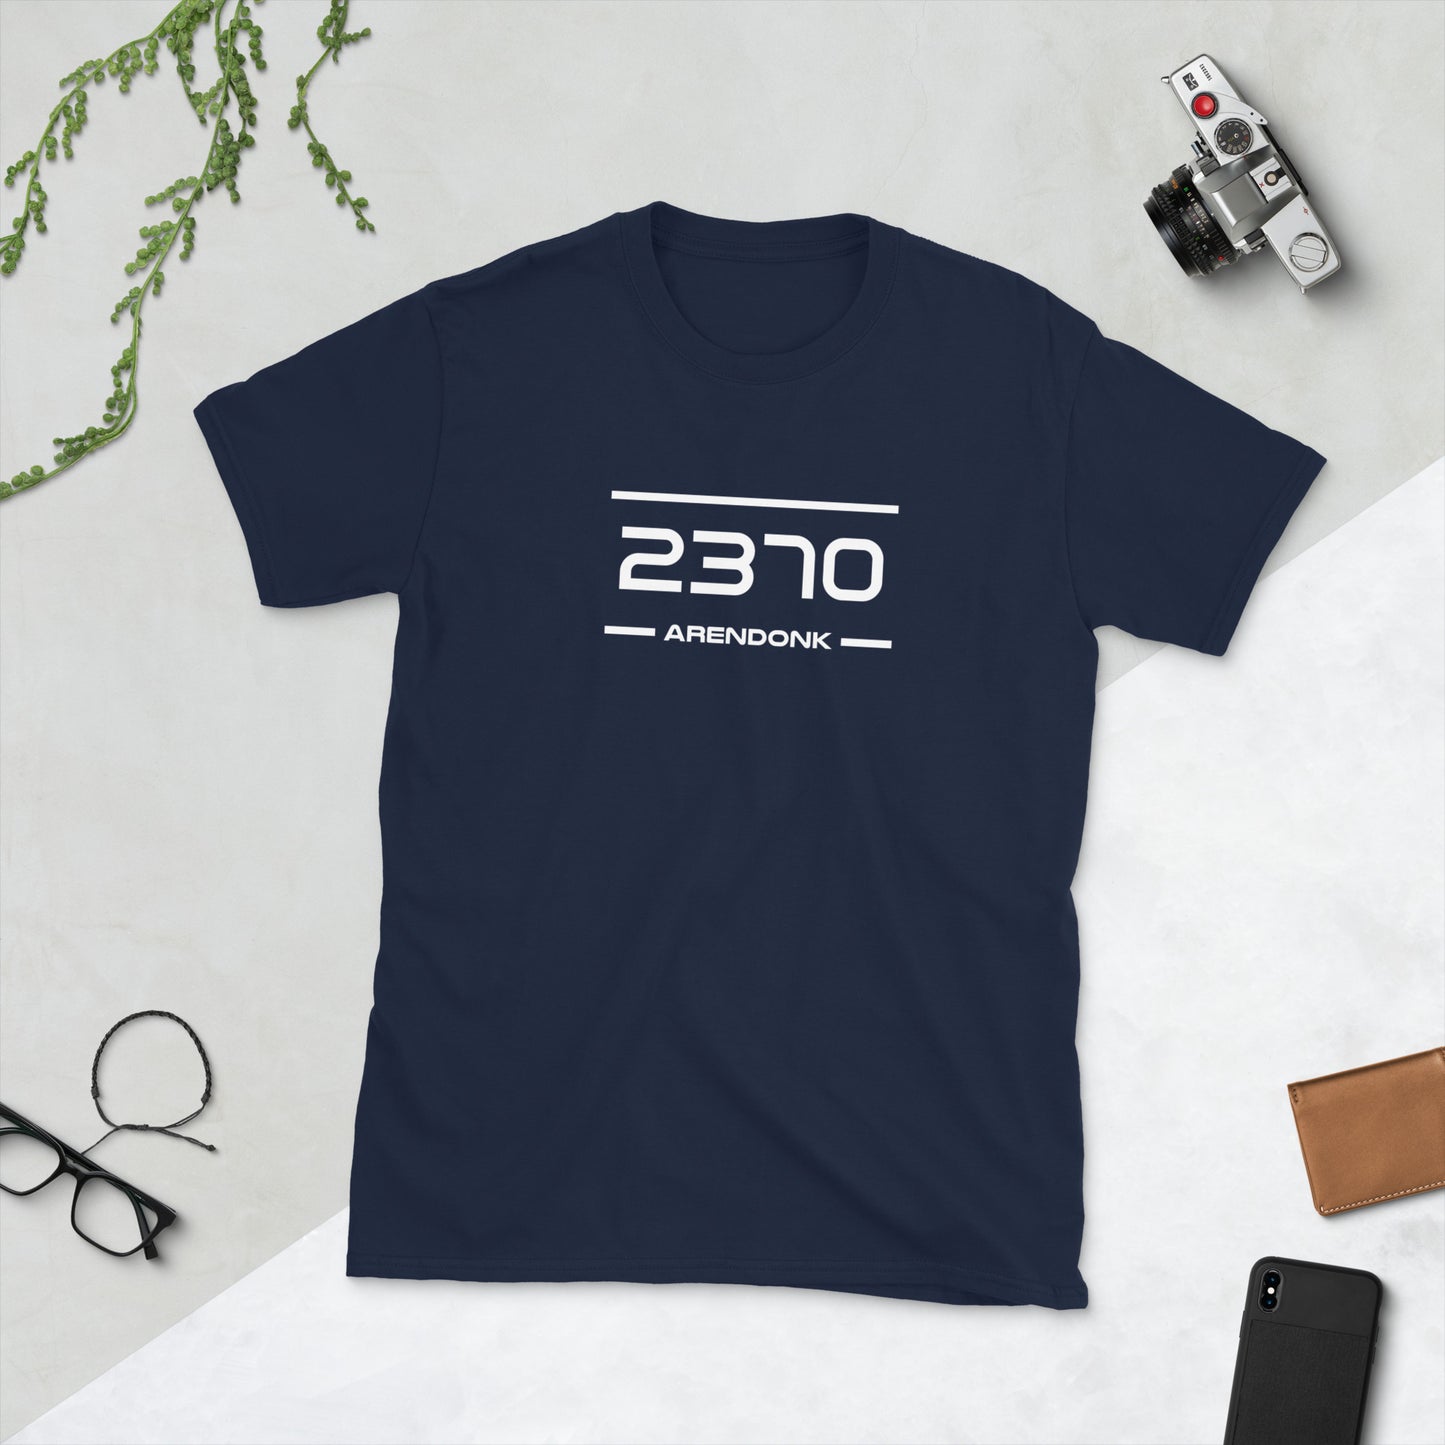 Tshirt - 2370 - Arendonk